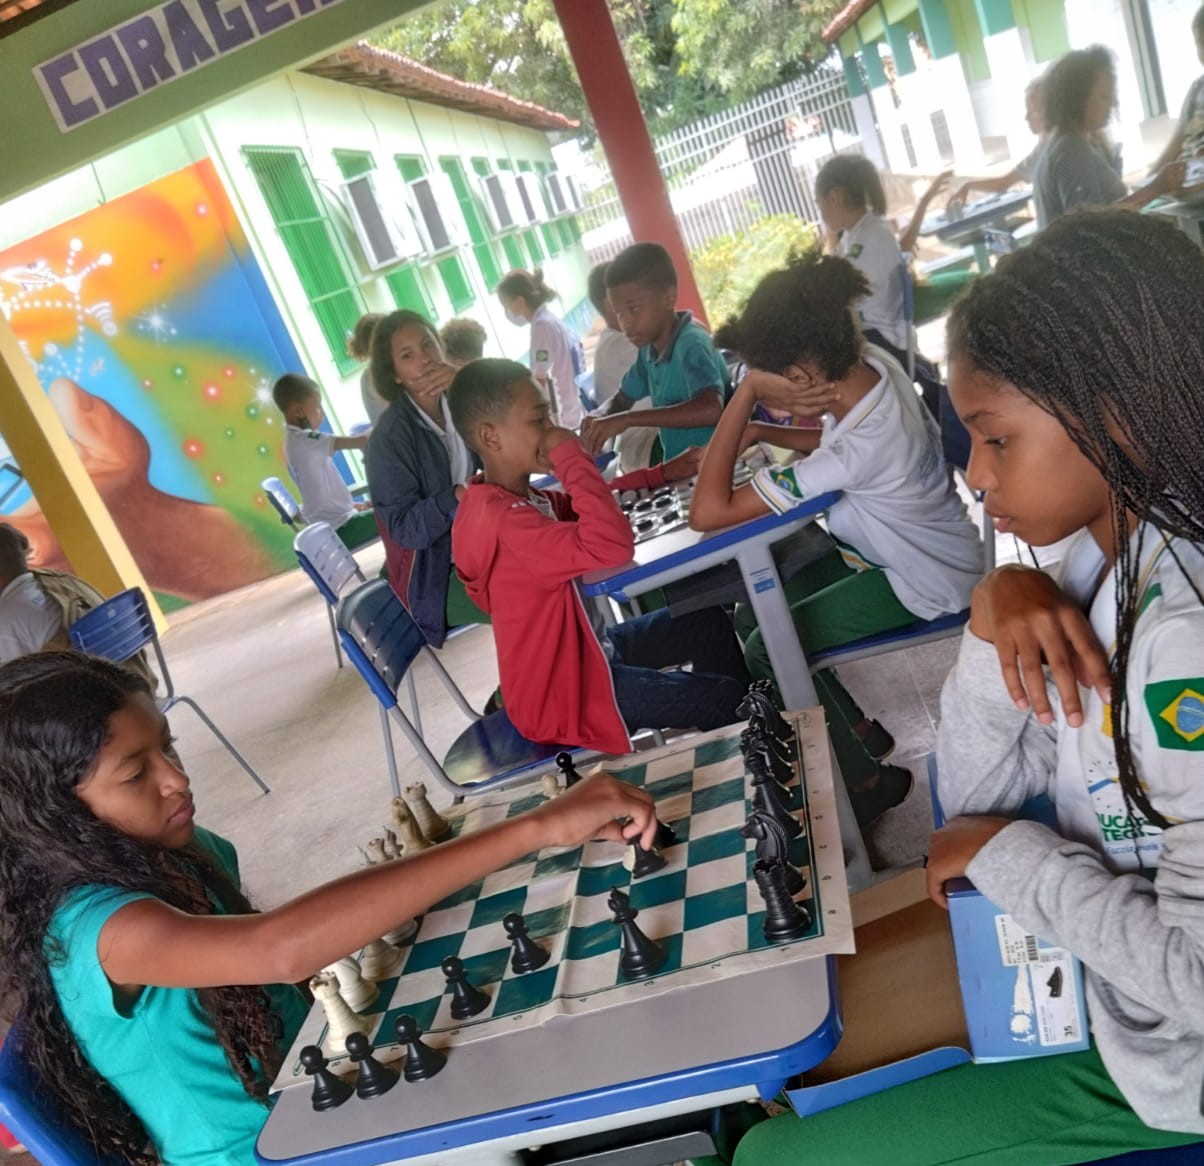 Aulas de xadrez contribuem para mudar a realidade de escola - MEC